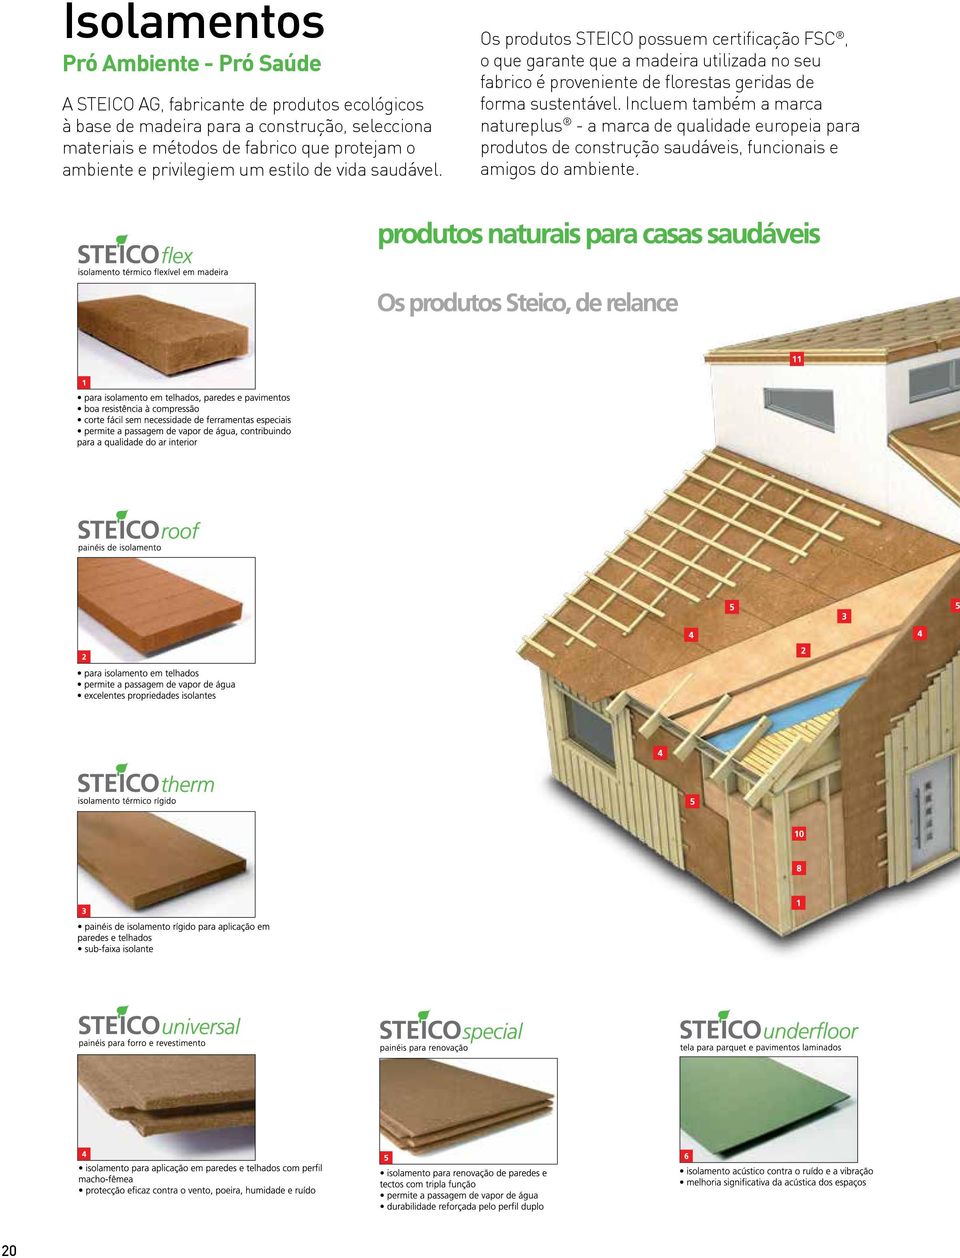 Os produtos STEICO possuem certificação FSC, o que garante que a madeira utilizada no seu fabrico é proveniente de florestas